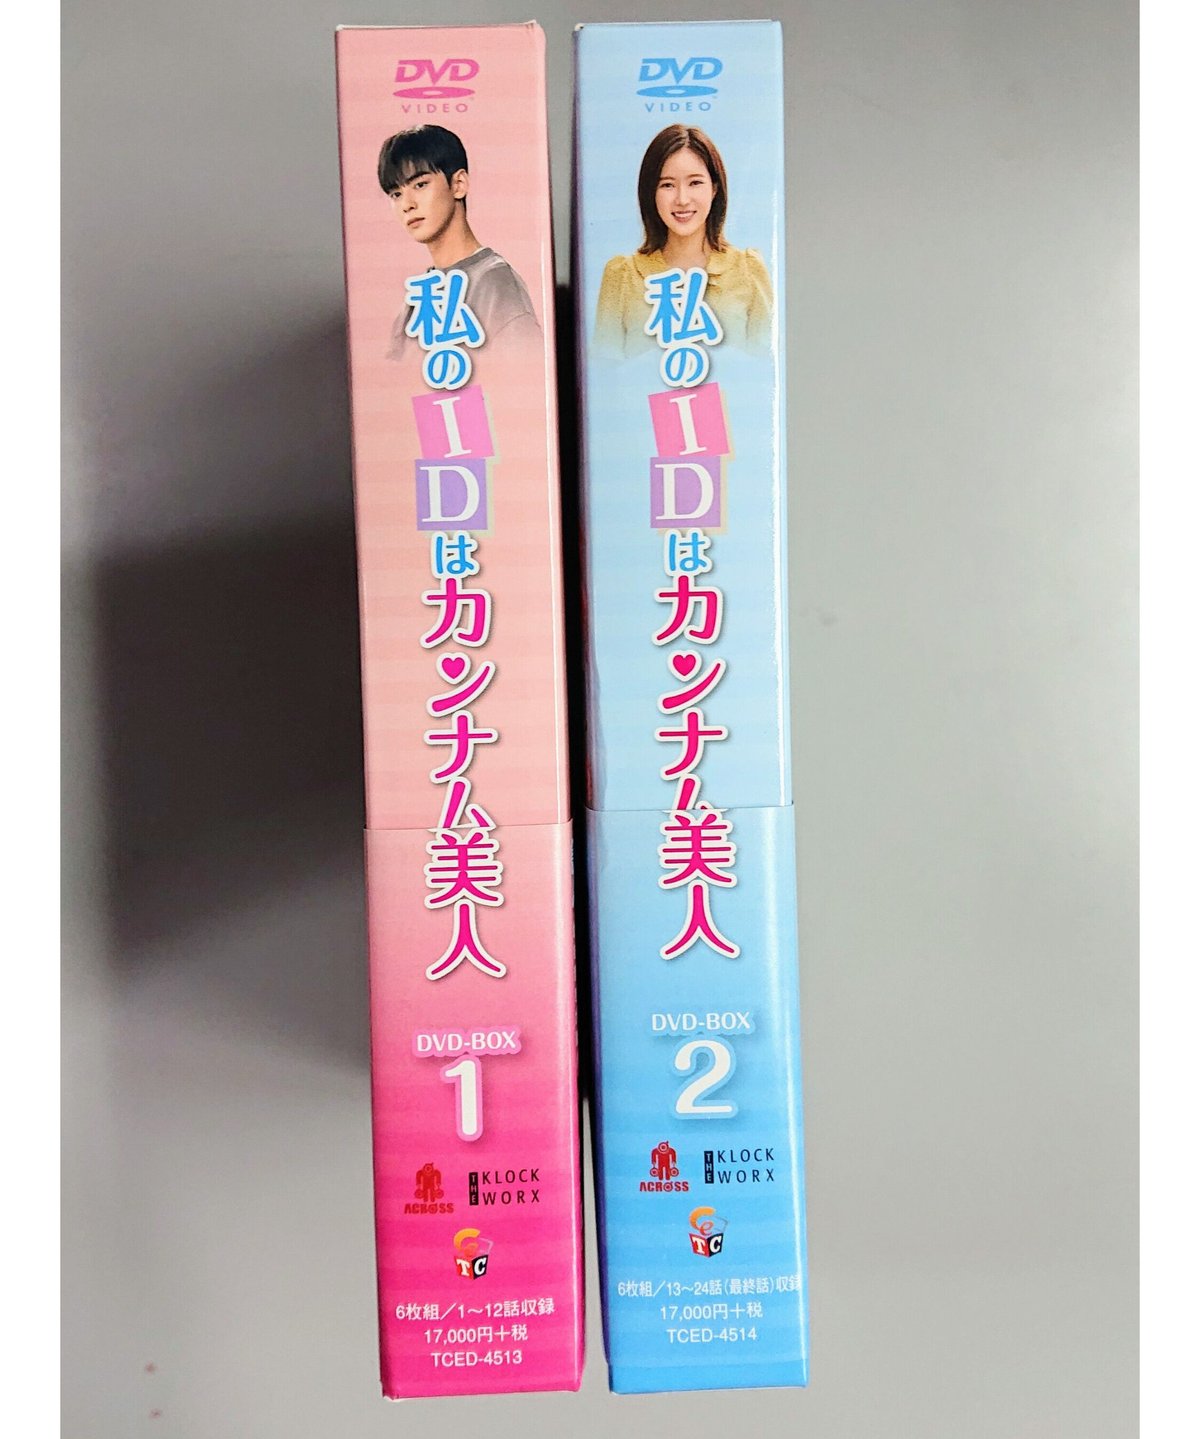 ASTRO チャ・ウヌ主演 『私のIDはカンナム美人』DVD-BOX 1&2 セット 